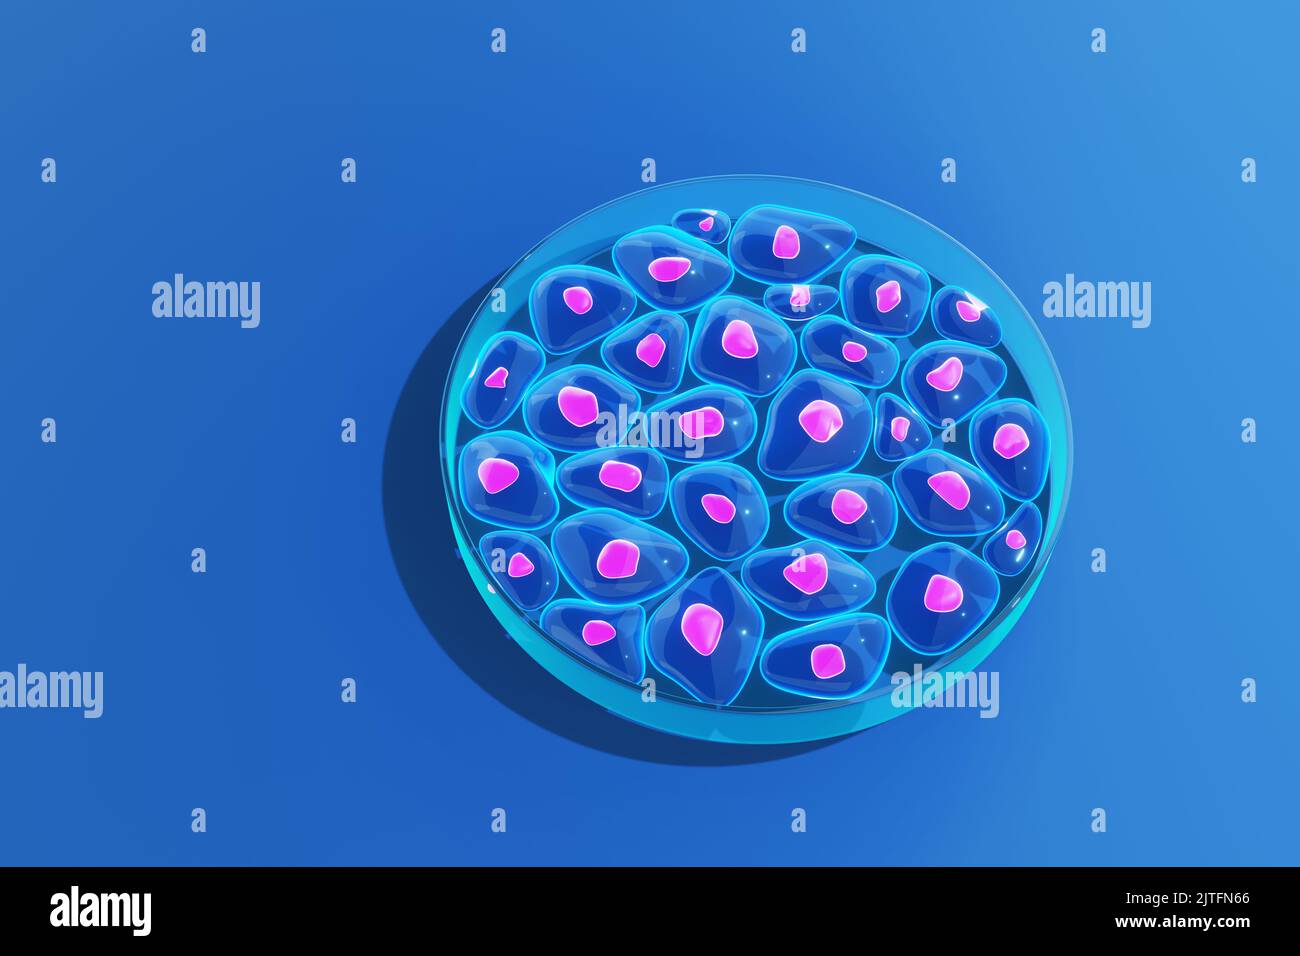 Zellen von Organismen, die in einer Glas-Petrischale (auch Zellkulturschale genannt) wachsen. Illustration des Konzepts des biologischen Experiments Stockfoto